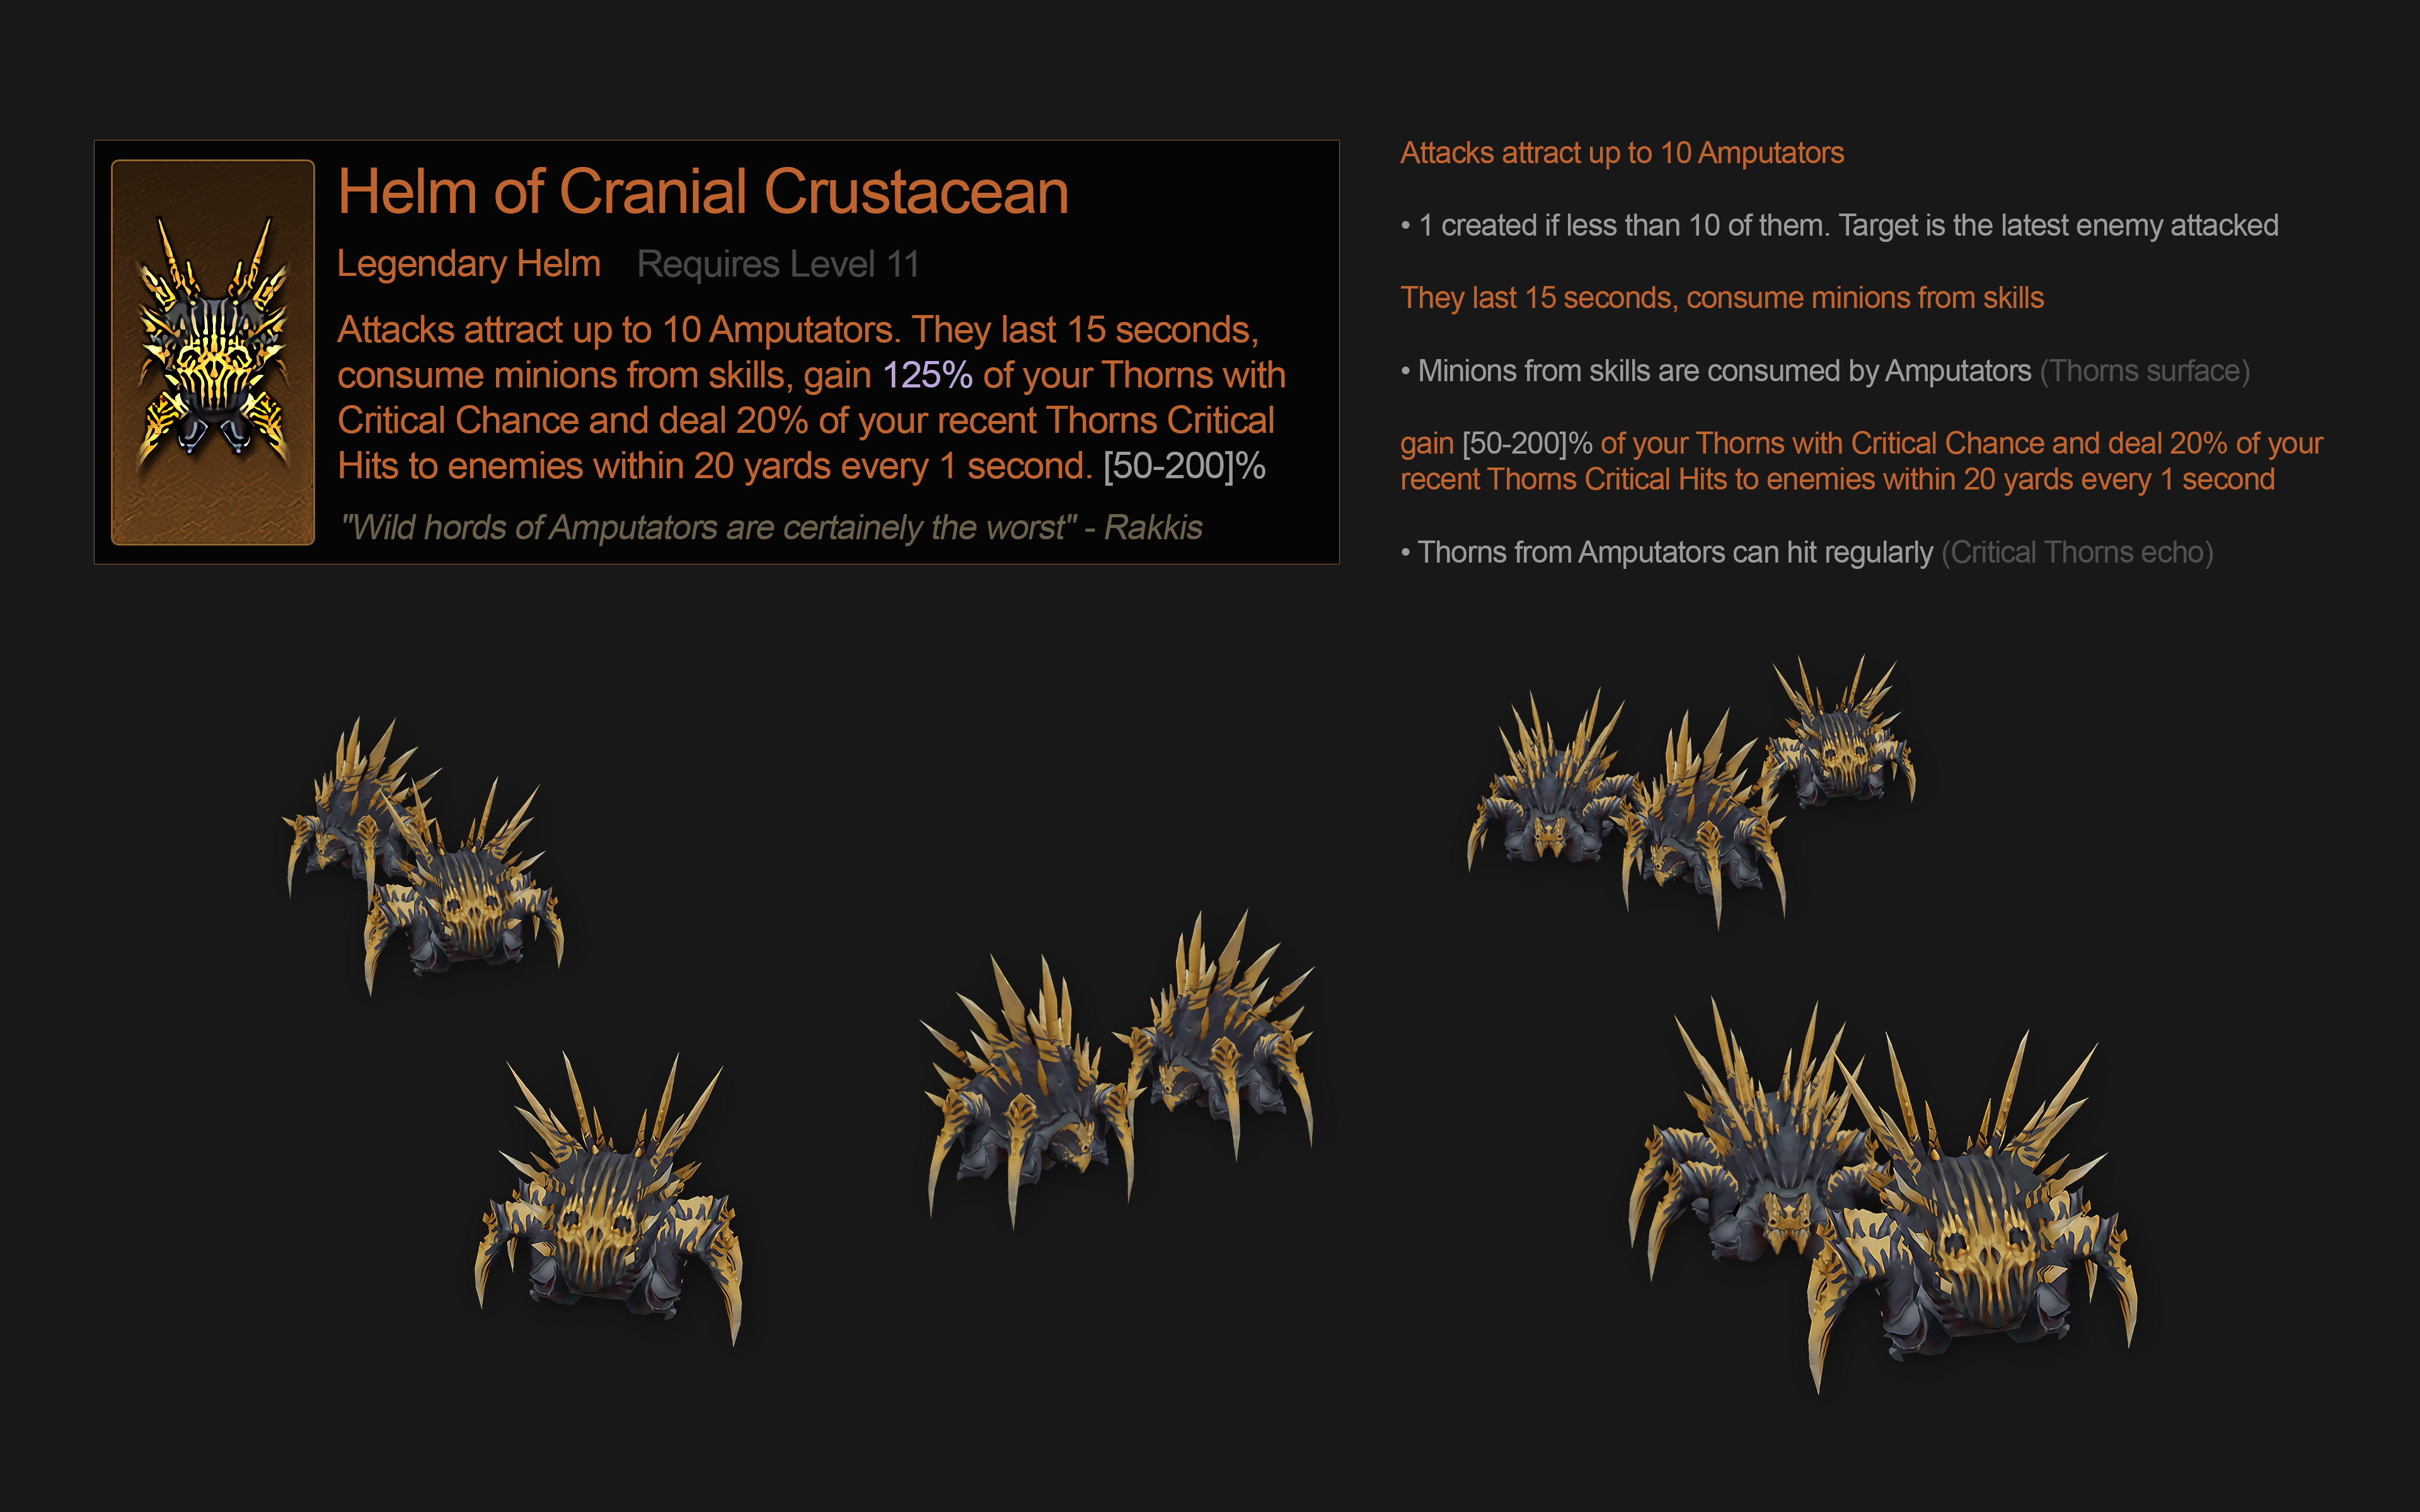 Helm of Cranial Crustacean Proposal